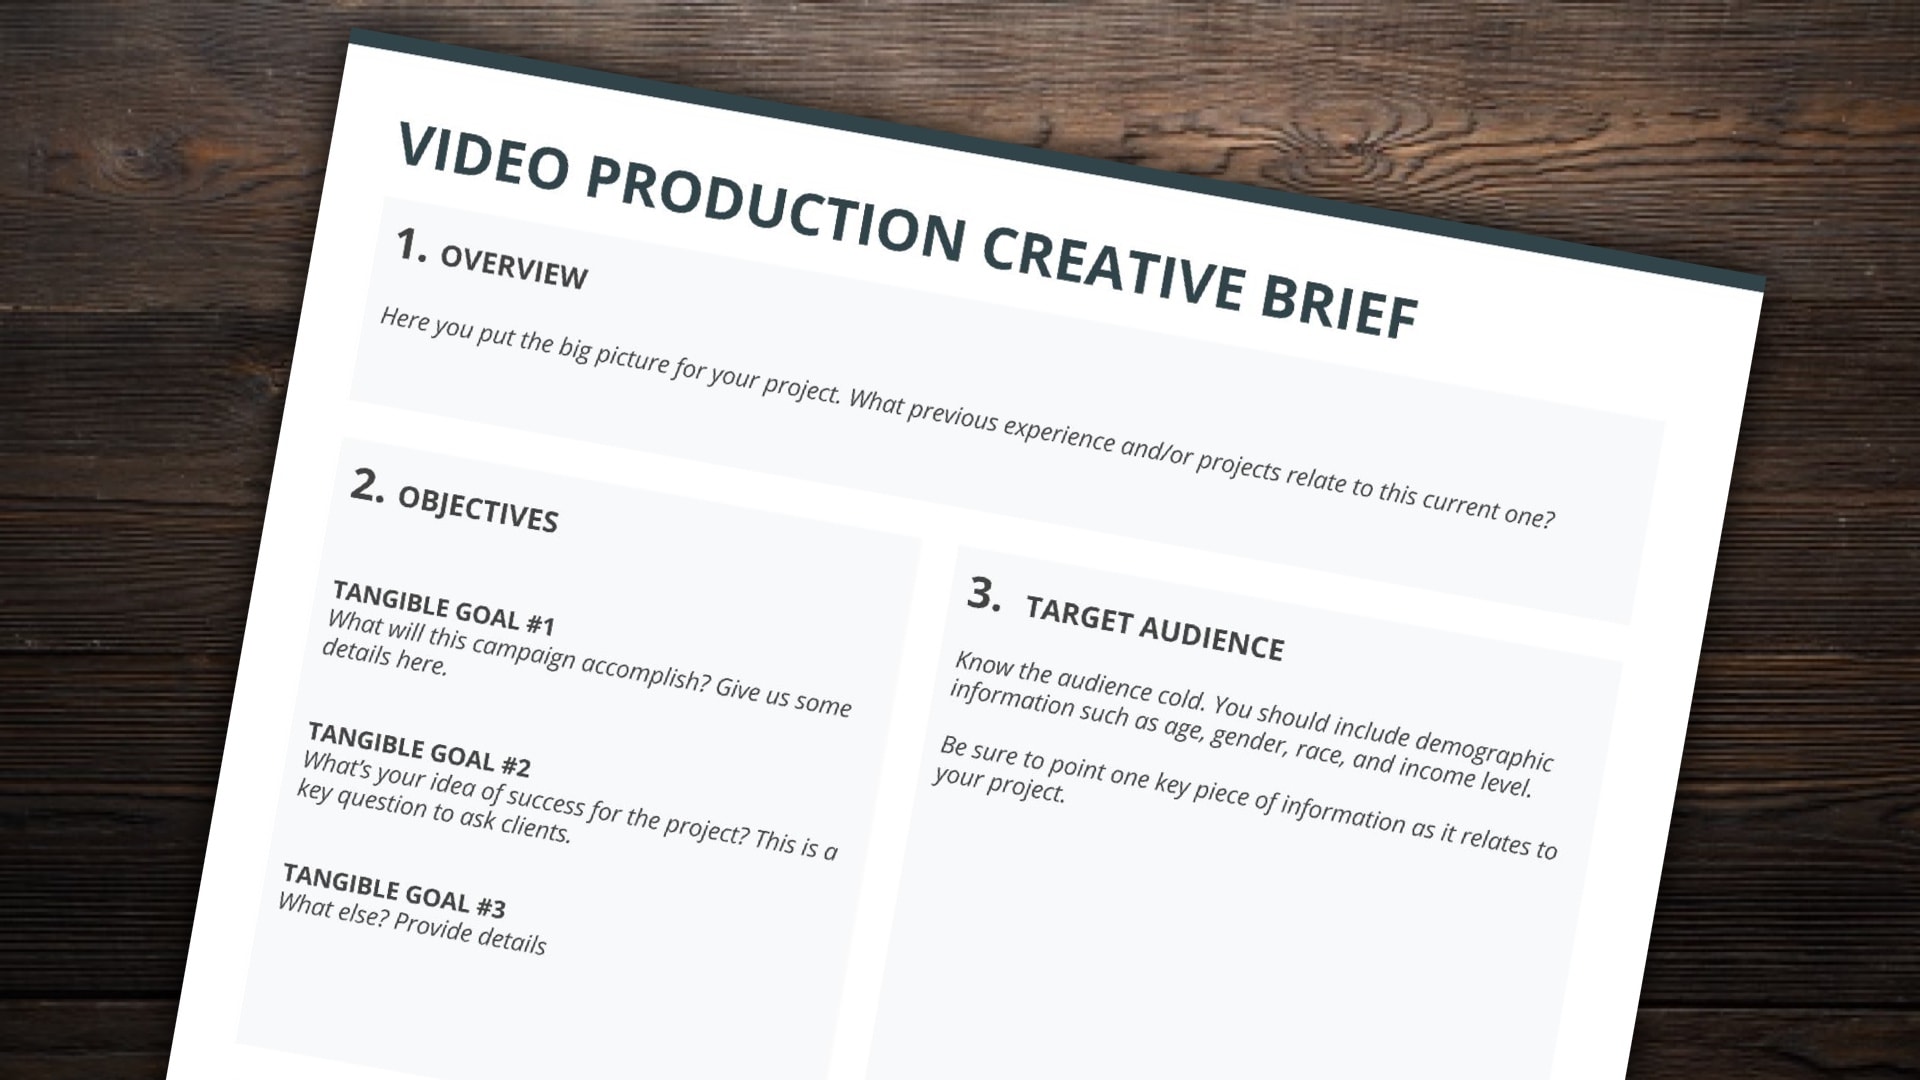 Client Brief video giới thiệu sản phẩm